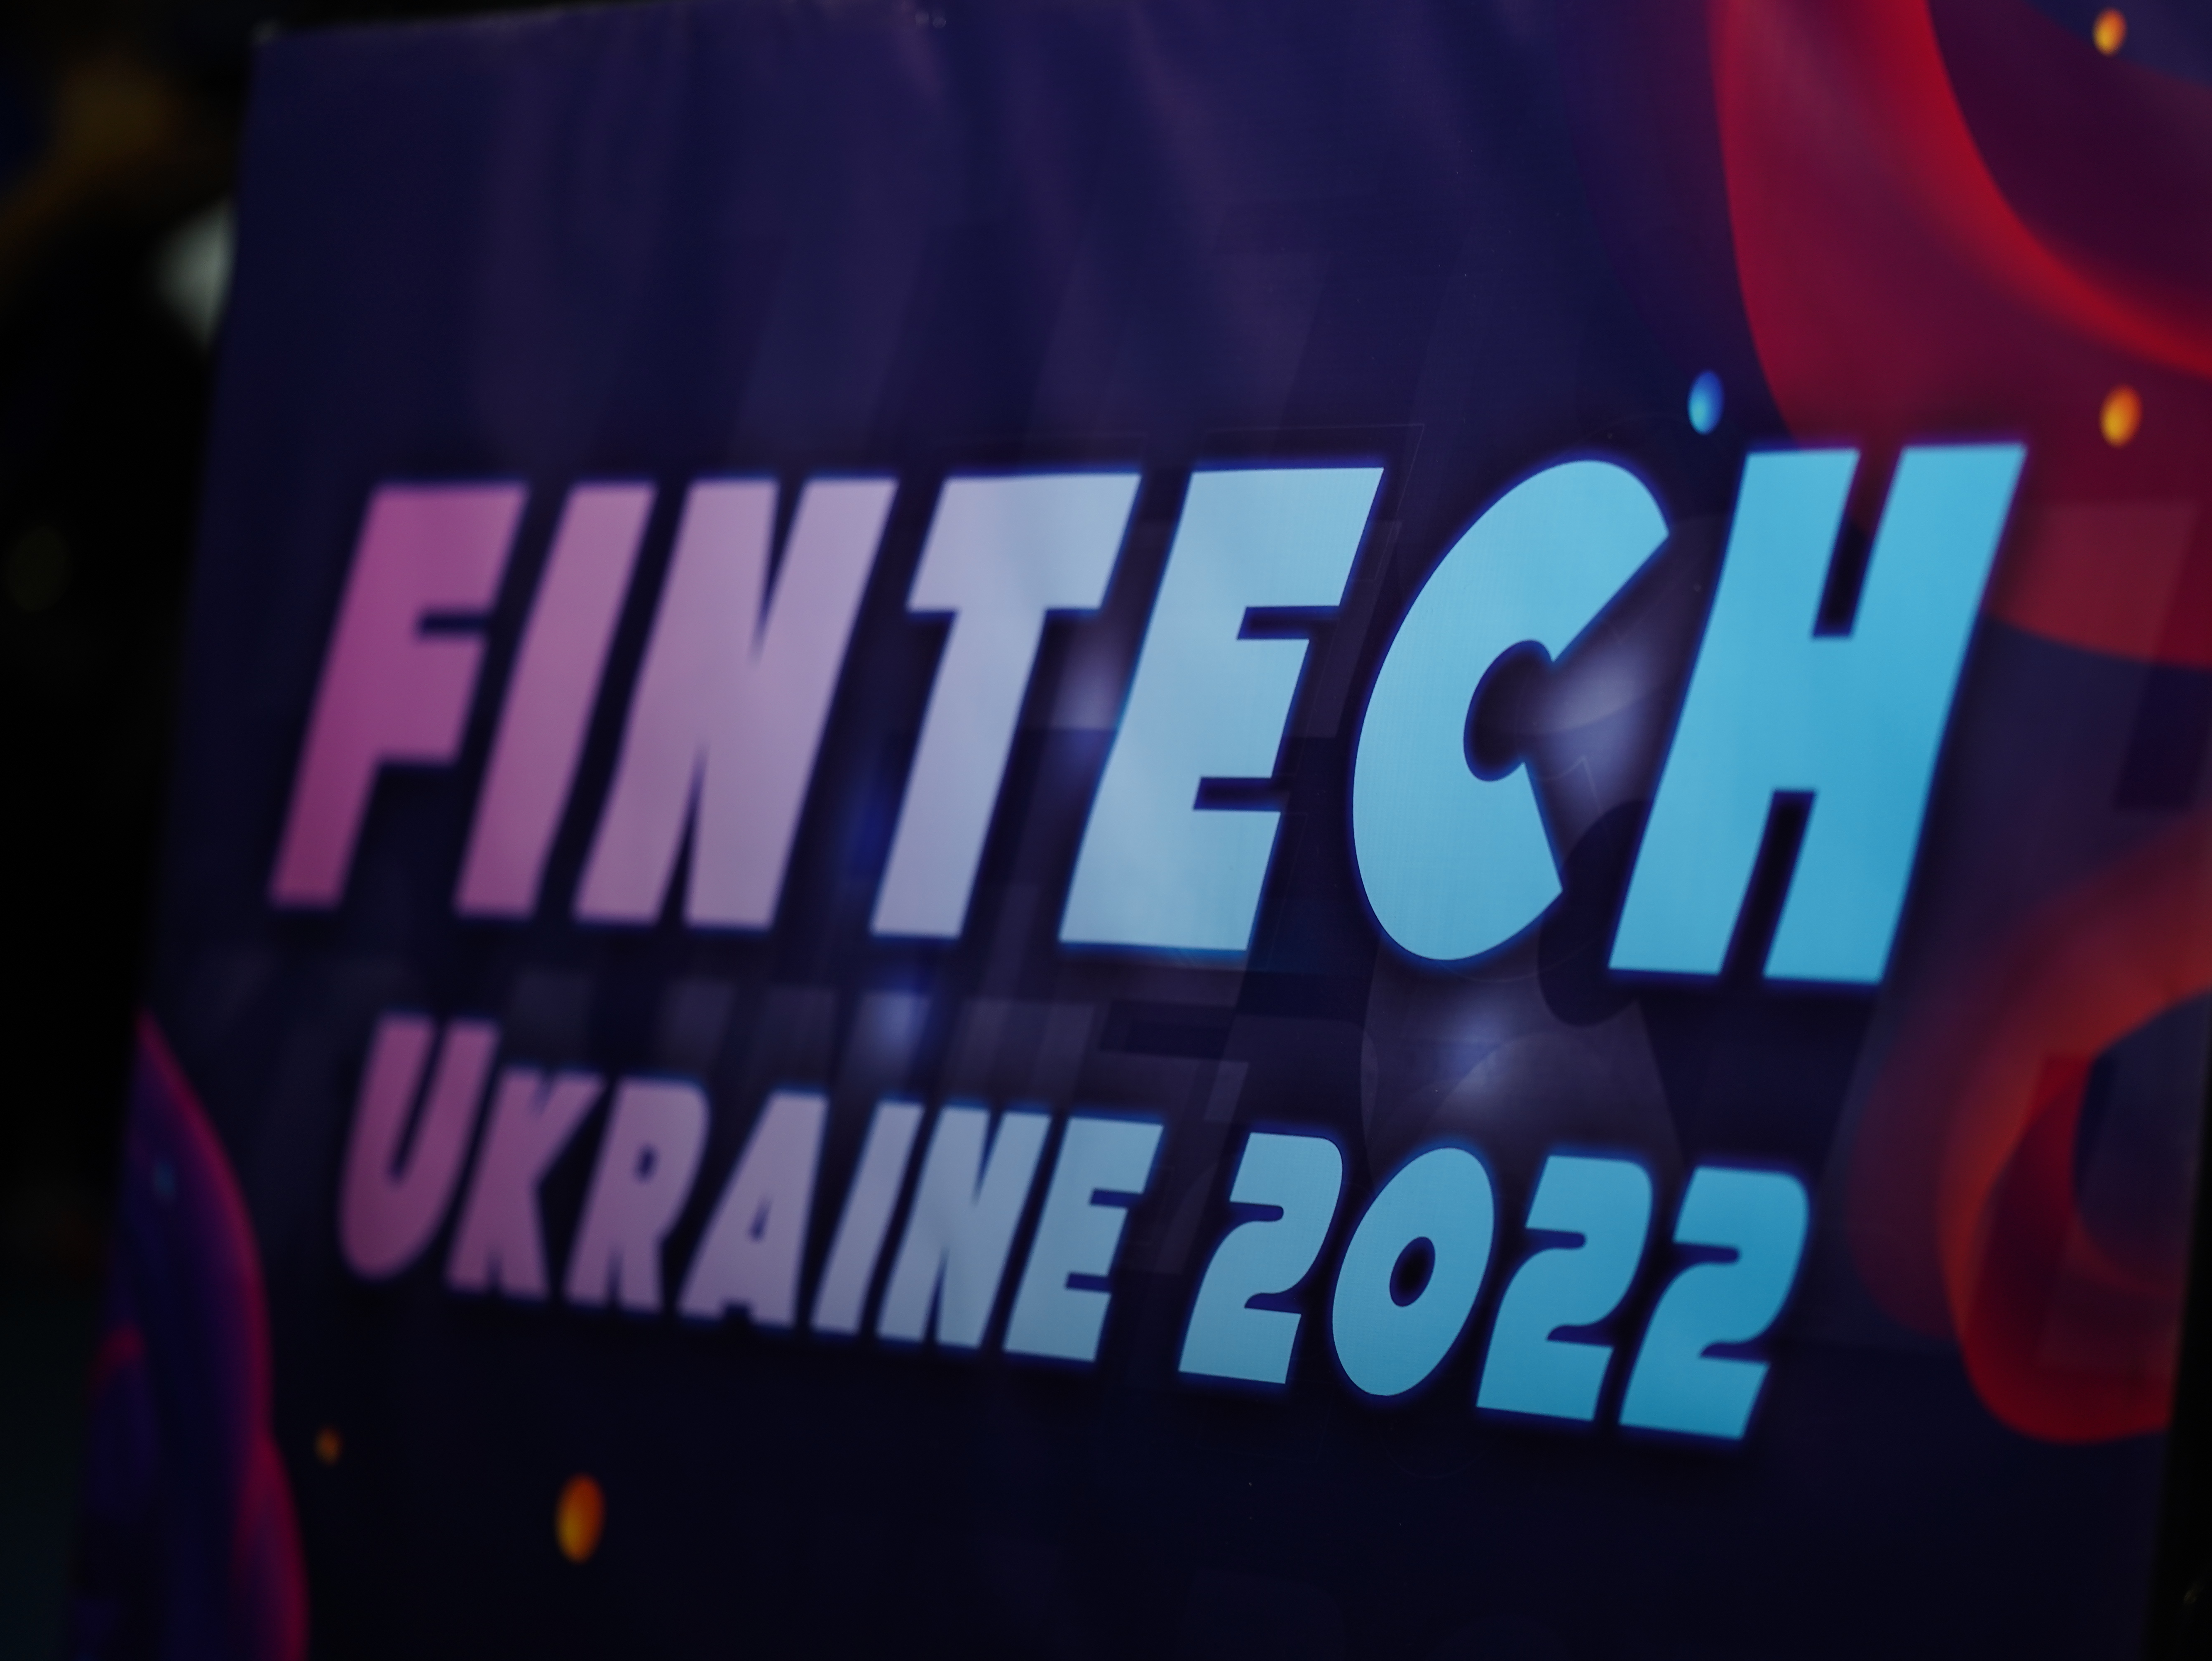 Финансовые услуги в Украине: что изменилось для потребителя с началом полномасштабной войны